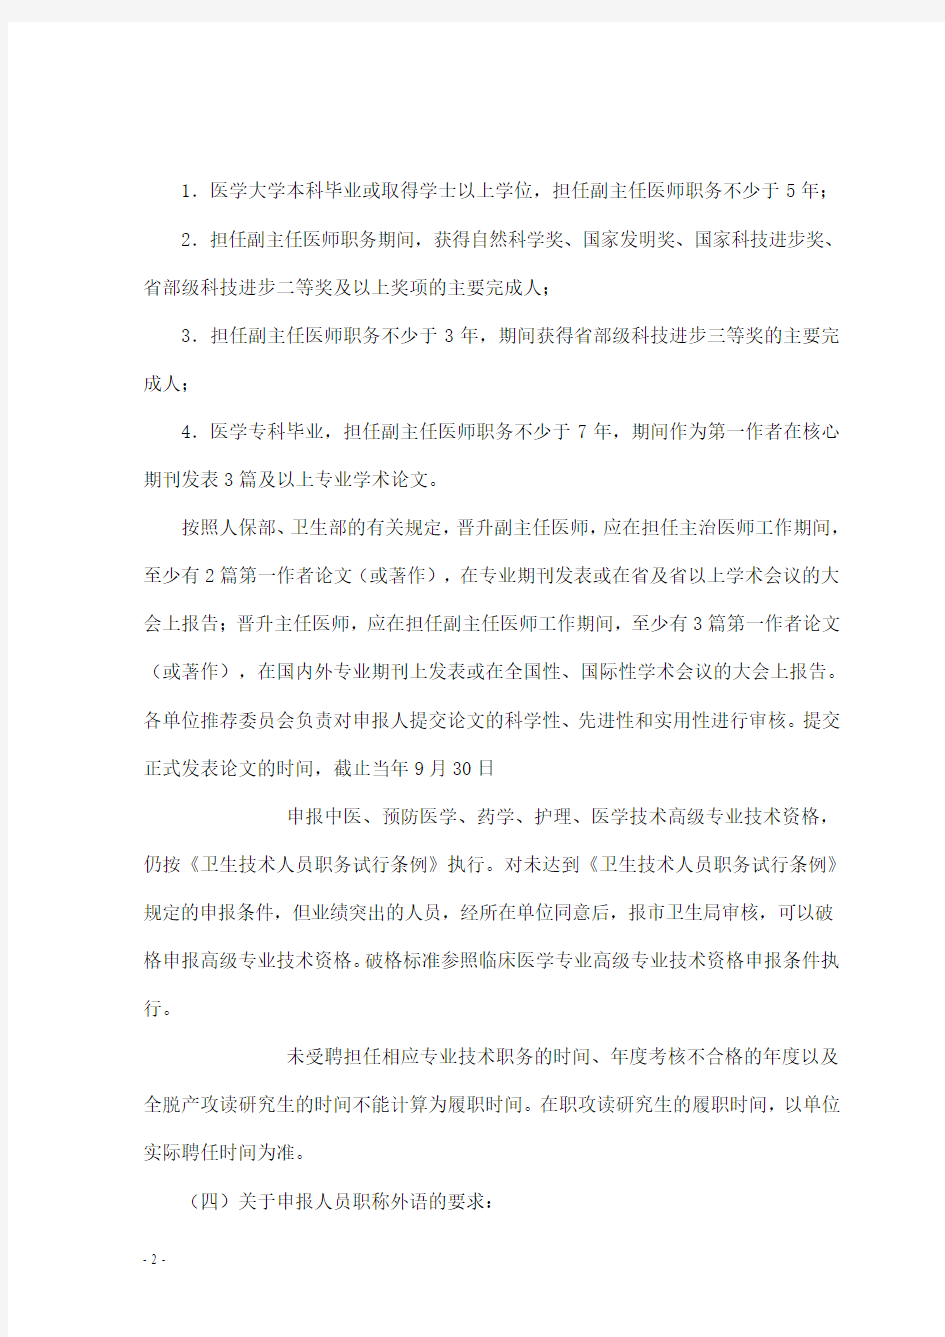 2015年北京卫生局卫生高级职称评审结果公示(DOC)